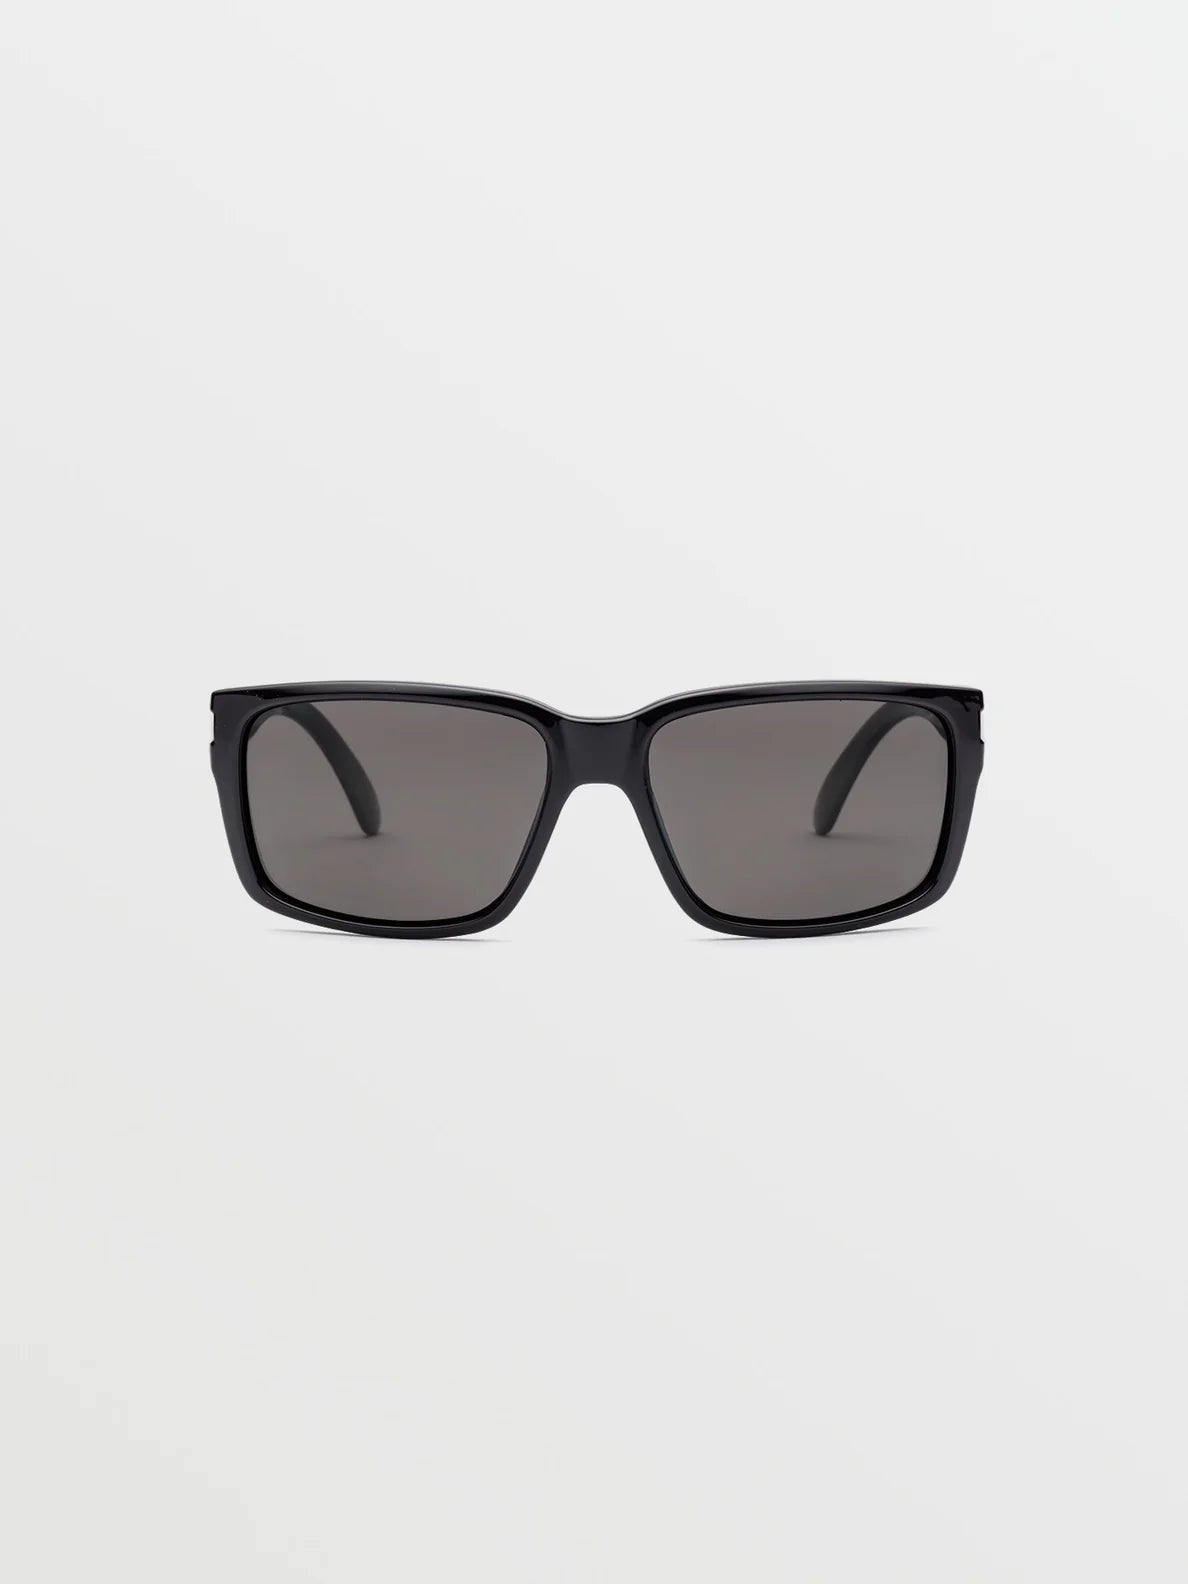 Volcom glänzend schwarz/graue Polarbrille